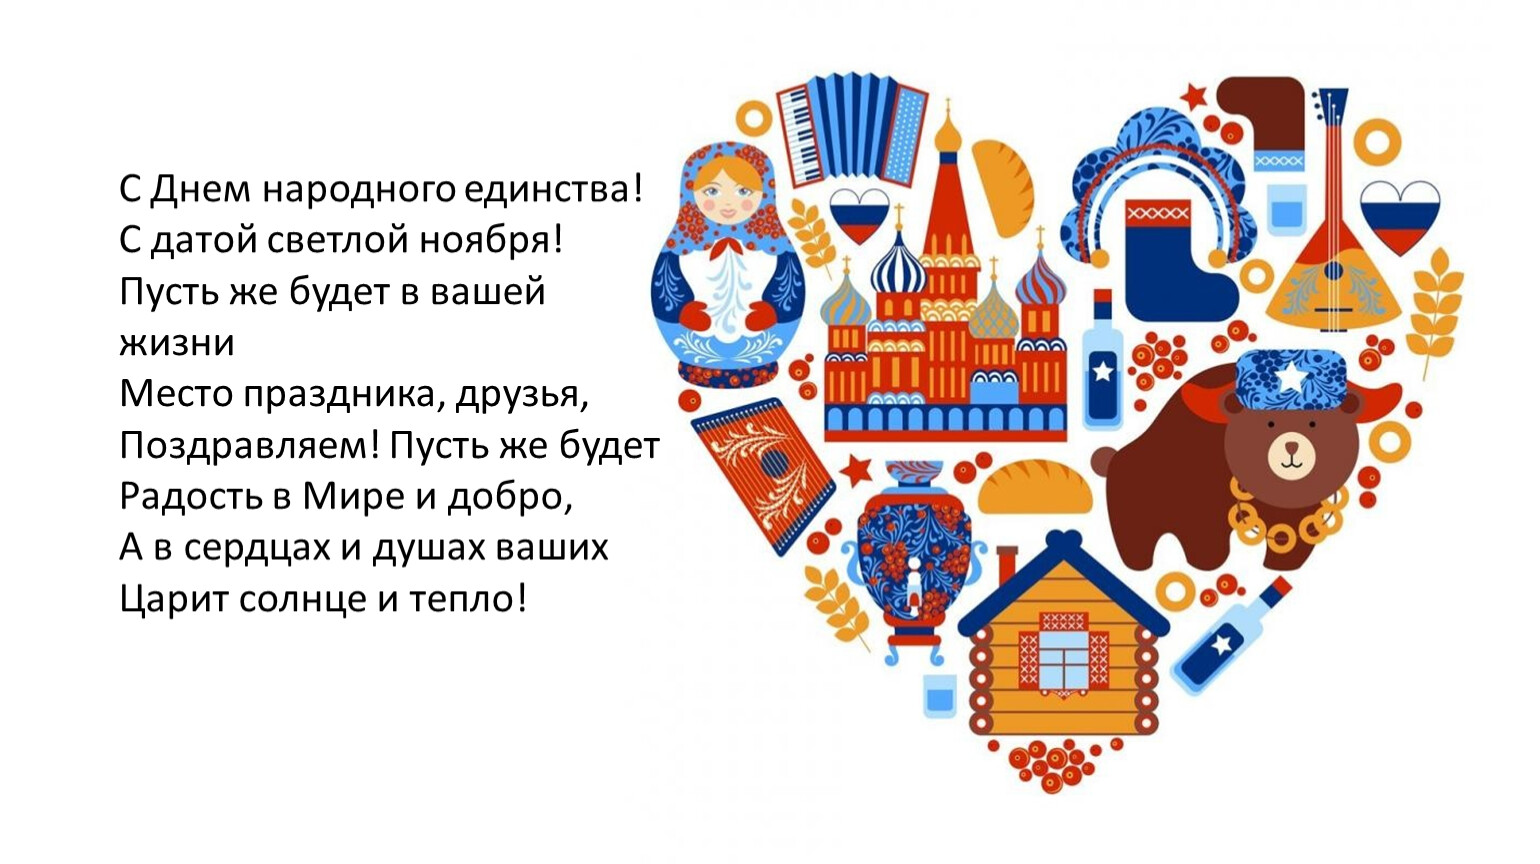 дом дружбы народов в москве